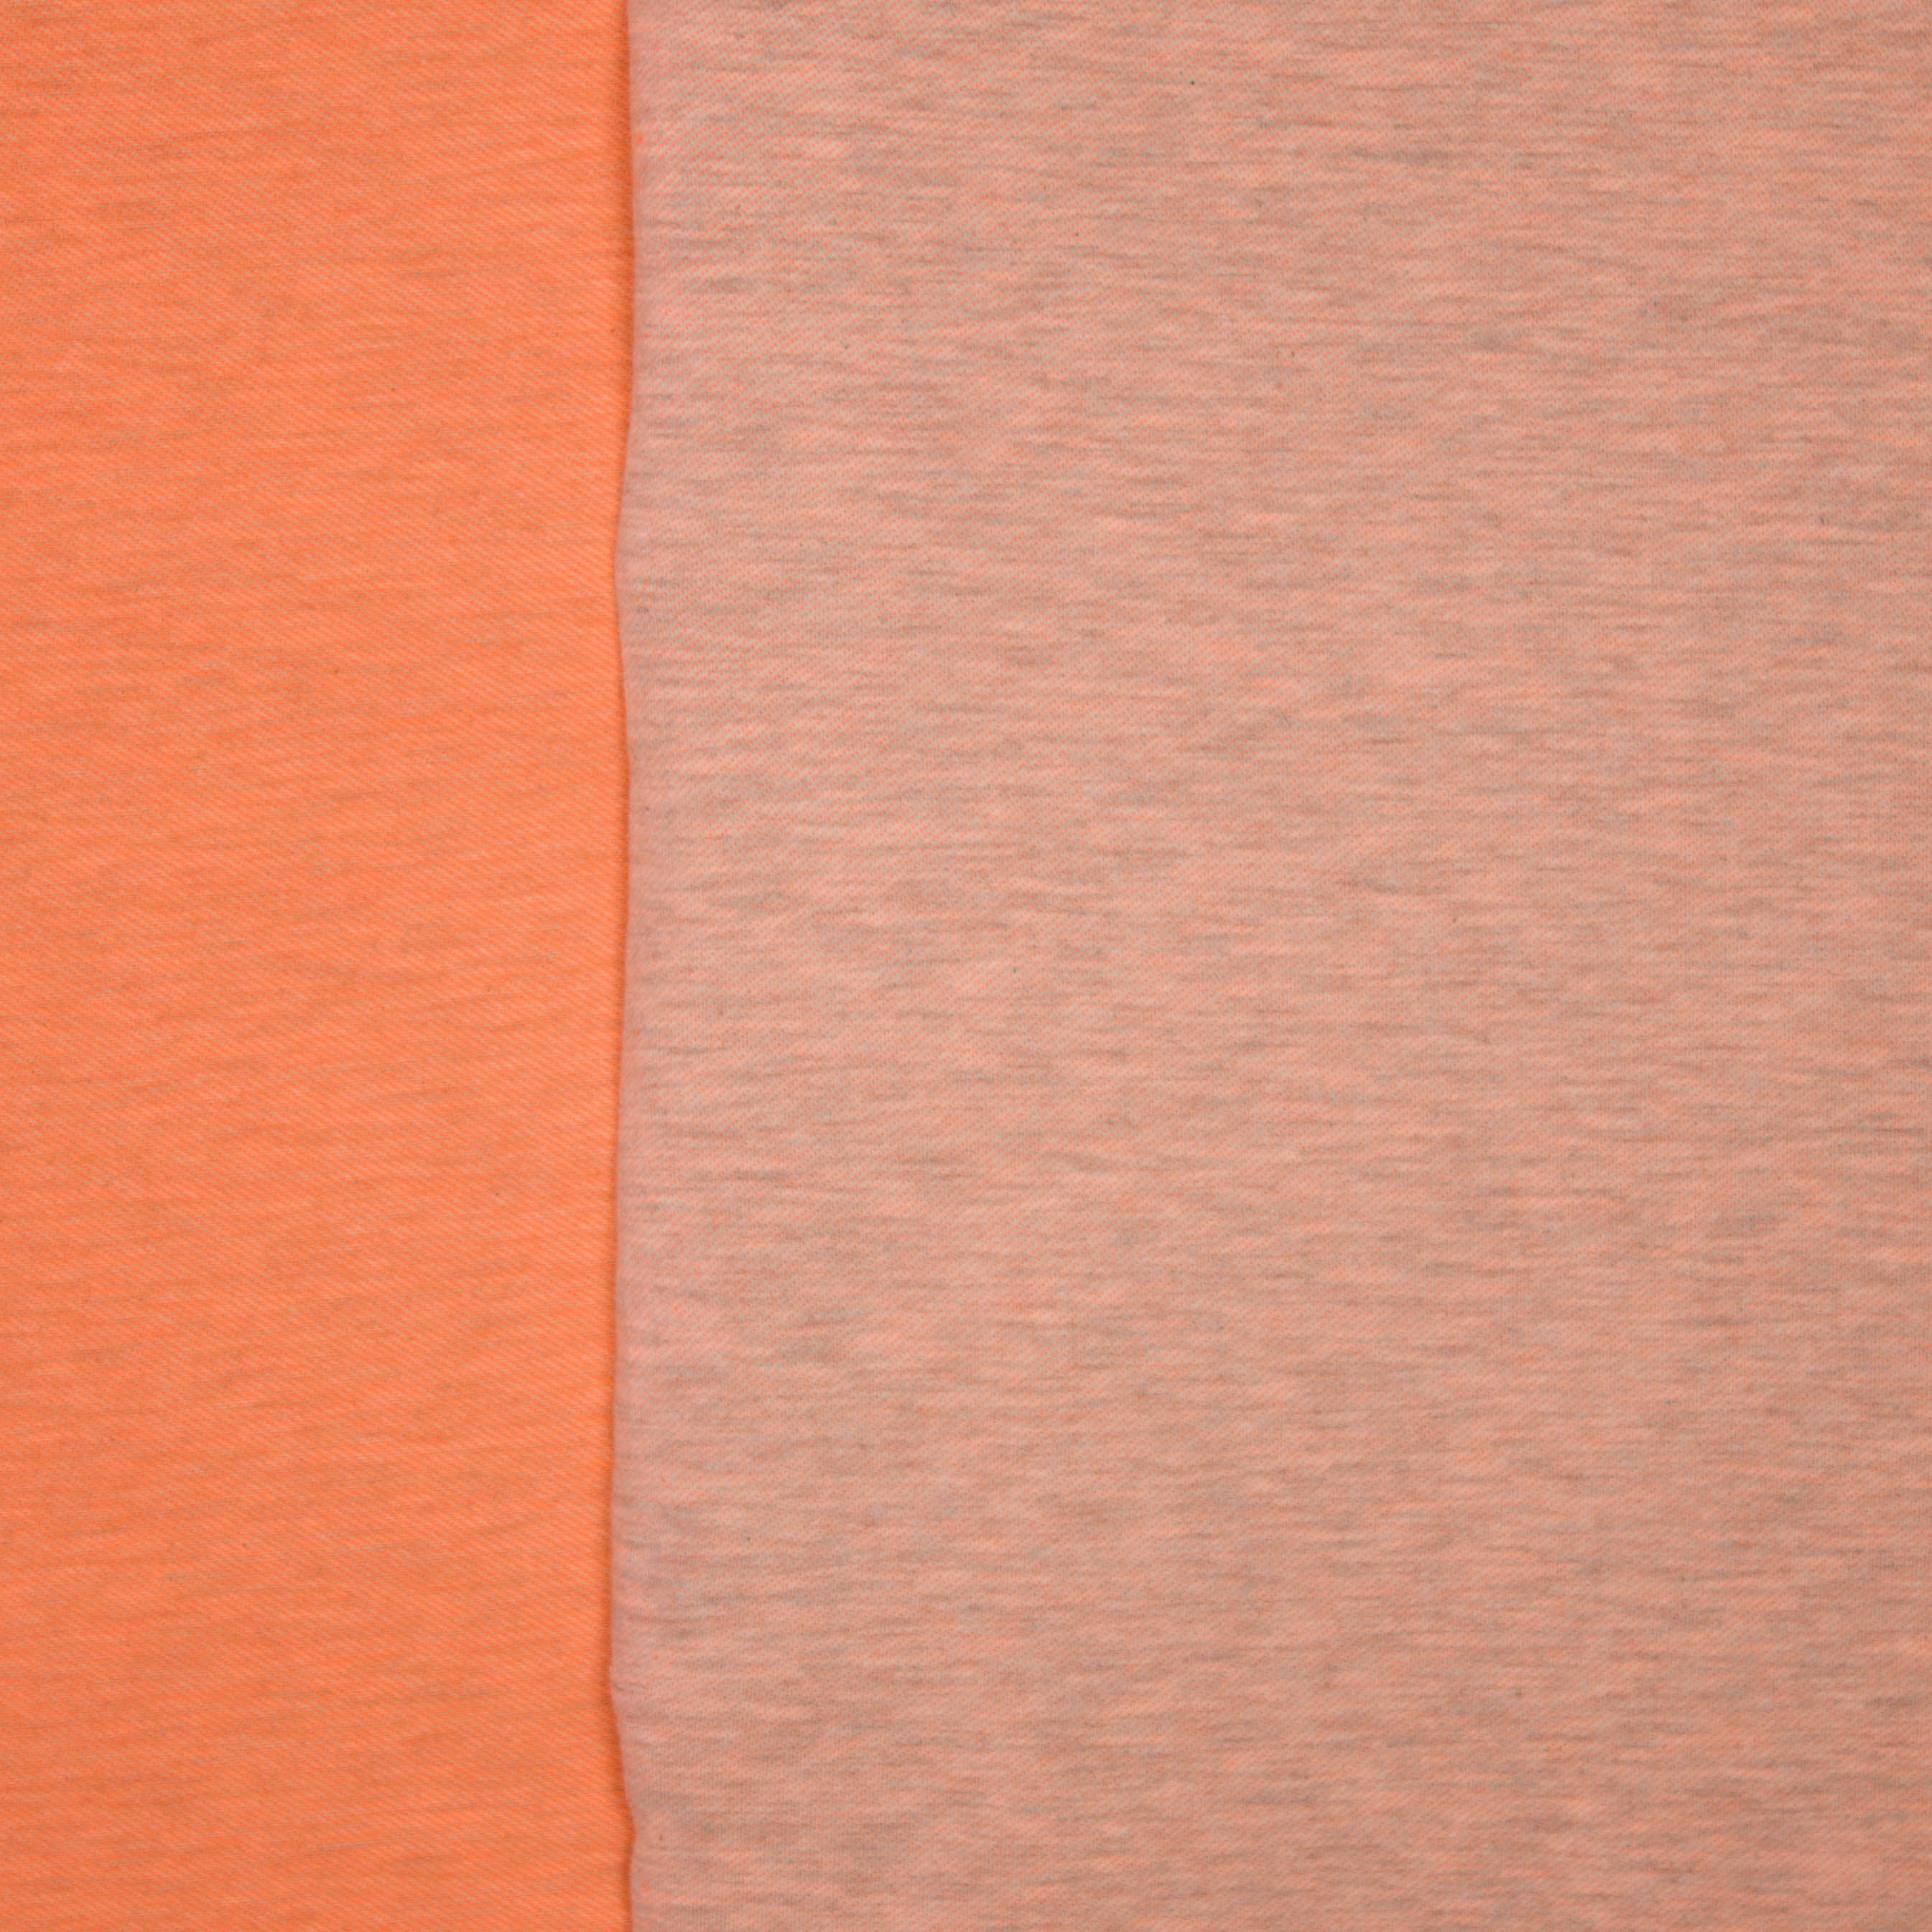 Neonoranje sweaterstof met fijne grijze streepjes - 'Neon sweat' van Poppy